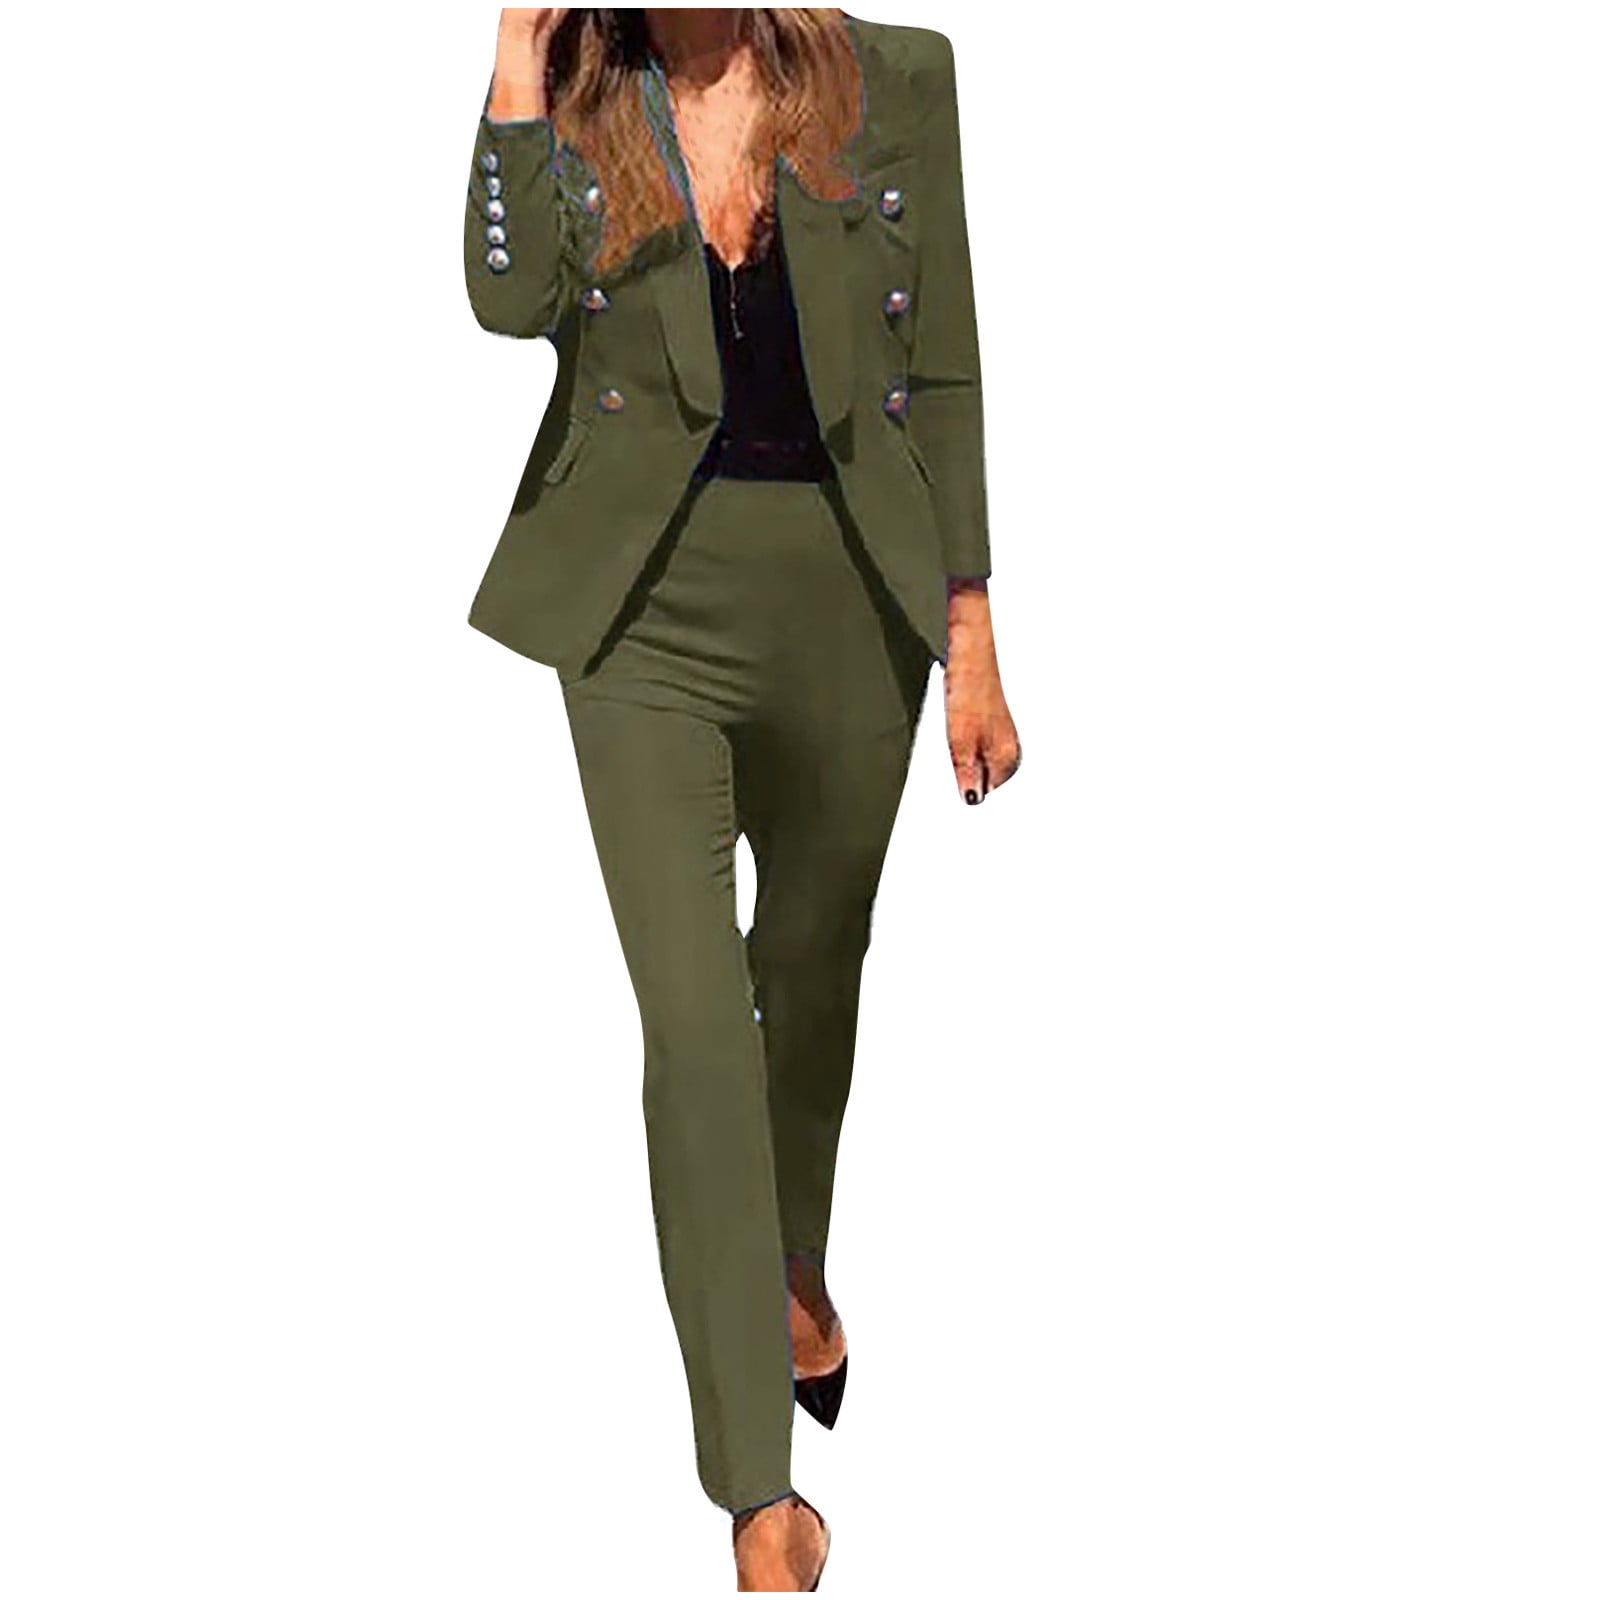 Plus Size High End Clothingplus Size Professional Crop Top & Pant Set -  Elegant Office Lady Suits